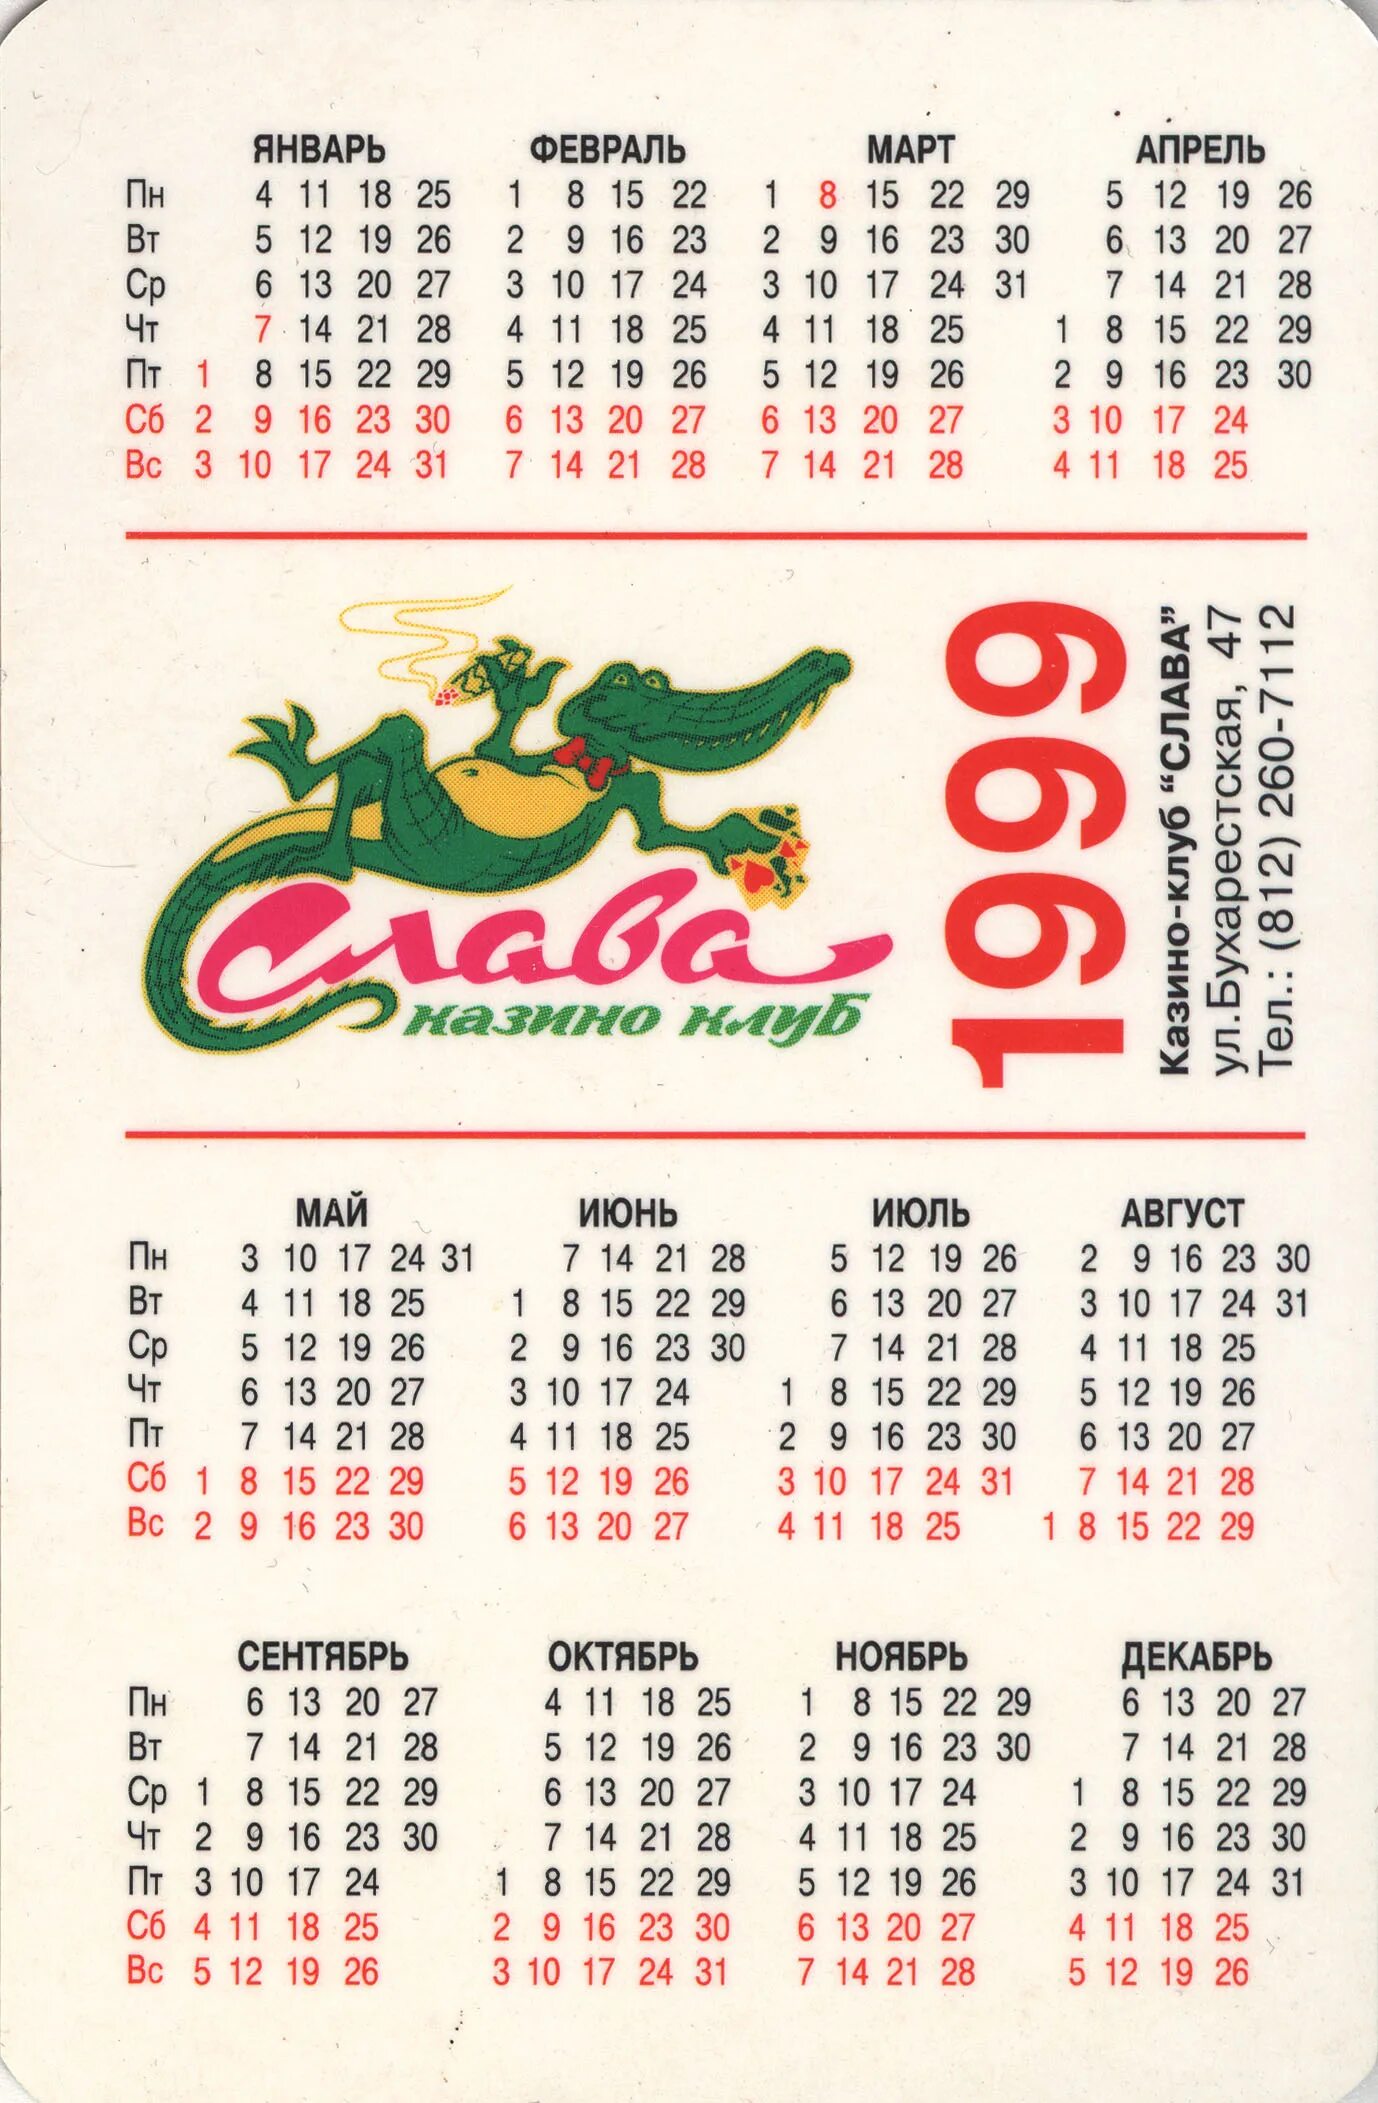 1 июня 1999. Календарь 1999 года. Календарик 1999 года. Календарь 1999 года по месяцам. Июль 1999 года календарь.